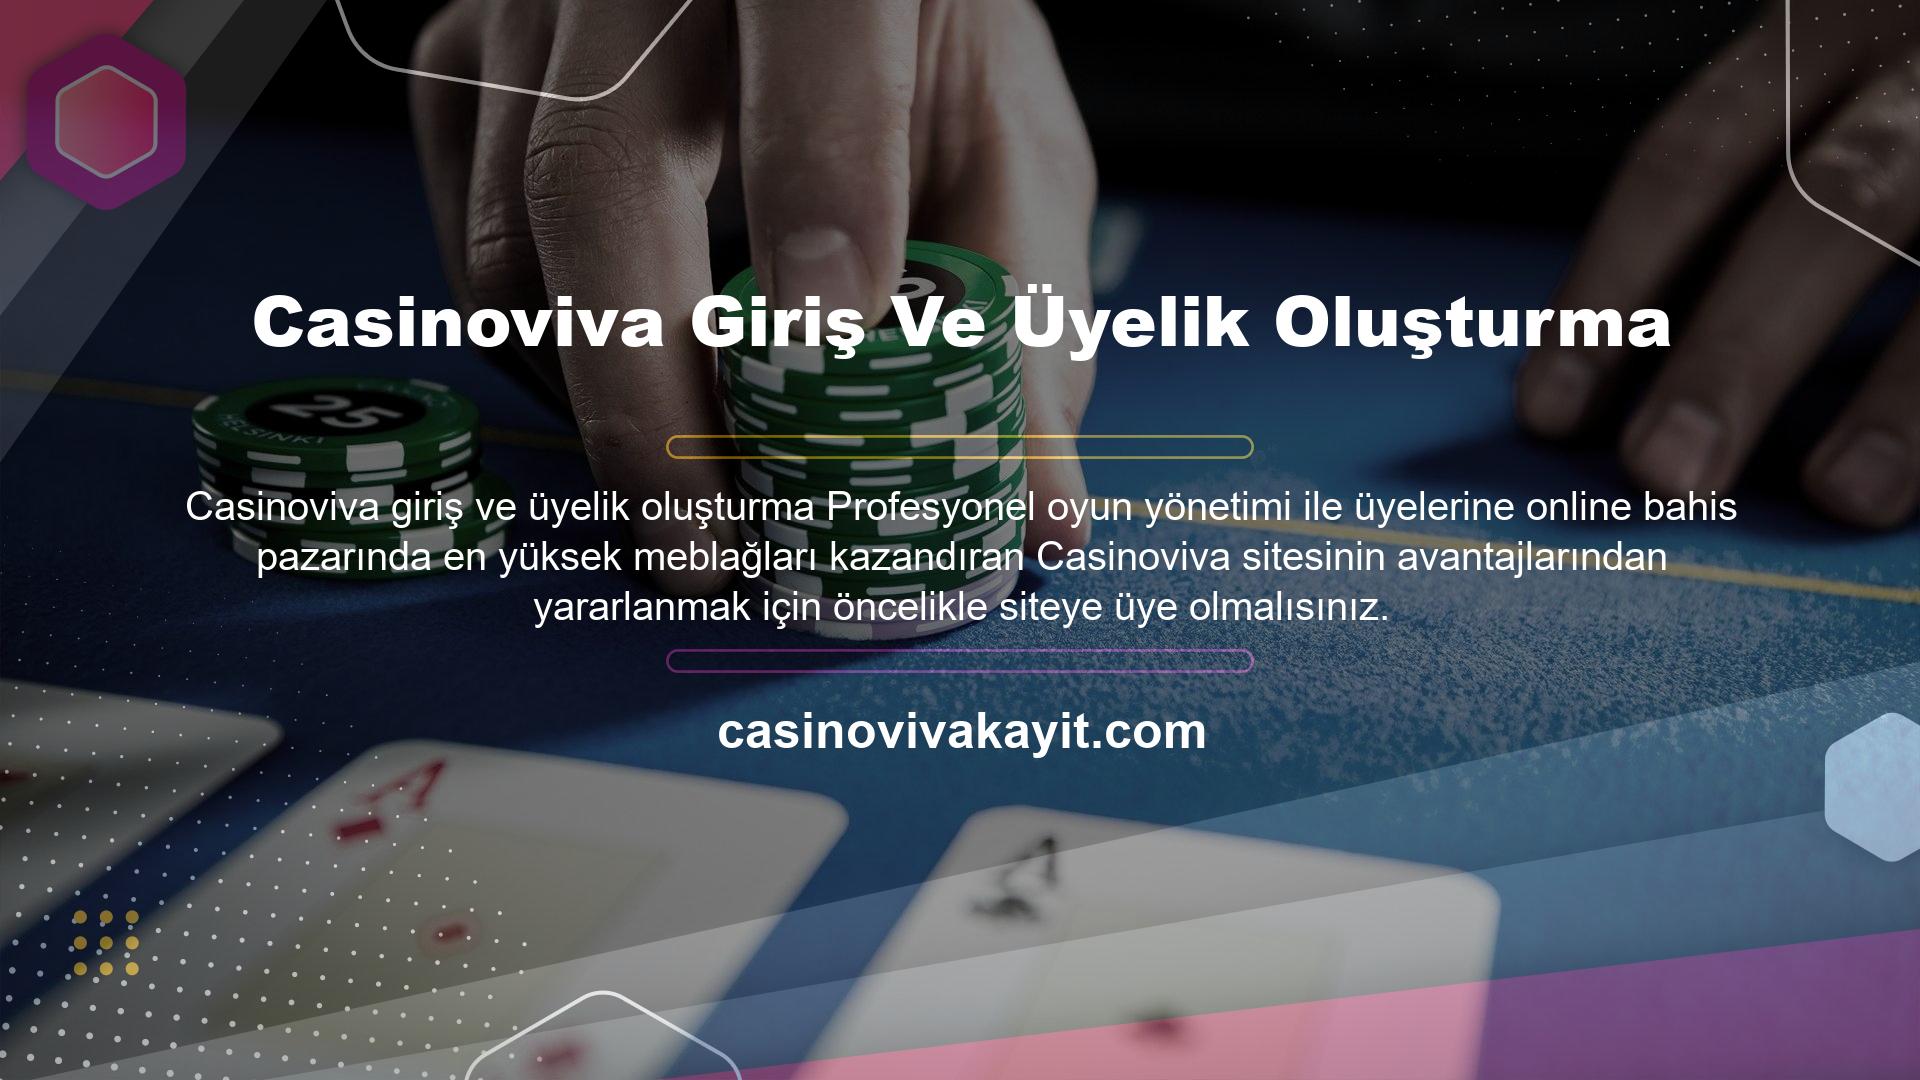 Casinoviva ana sayfasında yer alan "Katıl" yazısına tıklayarak üyelik işleminizi başlatabilirsiniz